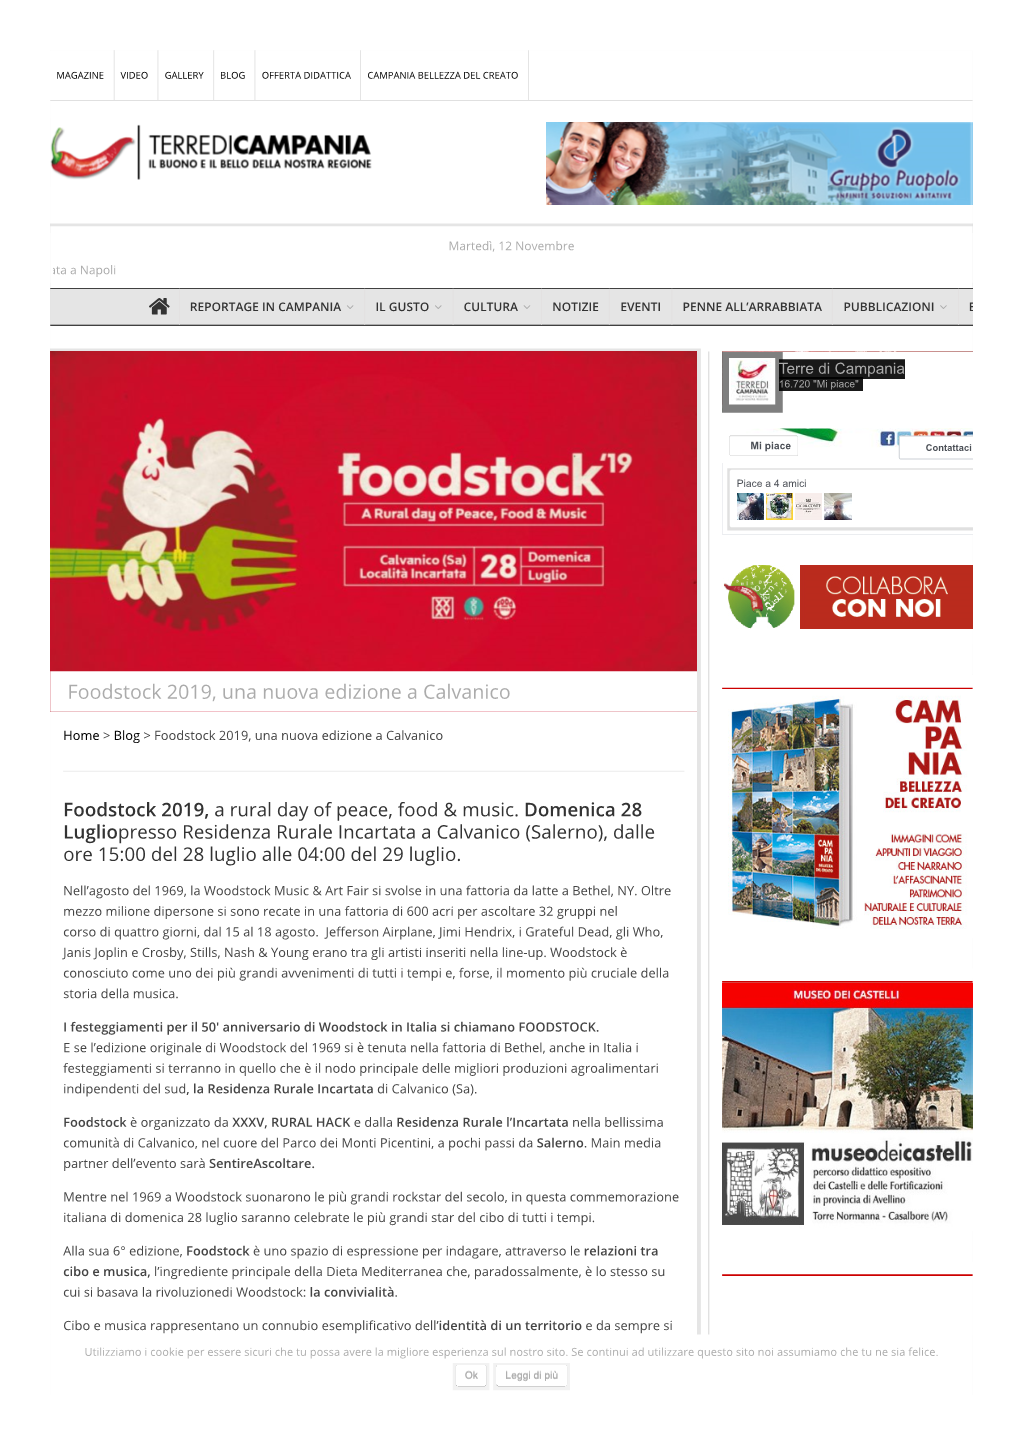 Foodstock 2019, Una Nuova Edizione a Calvanico